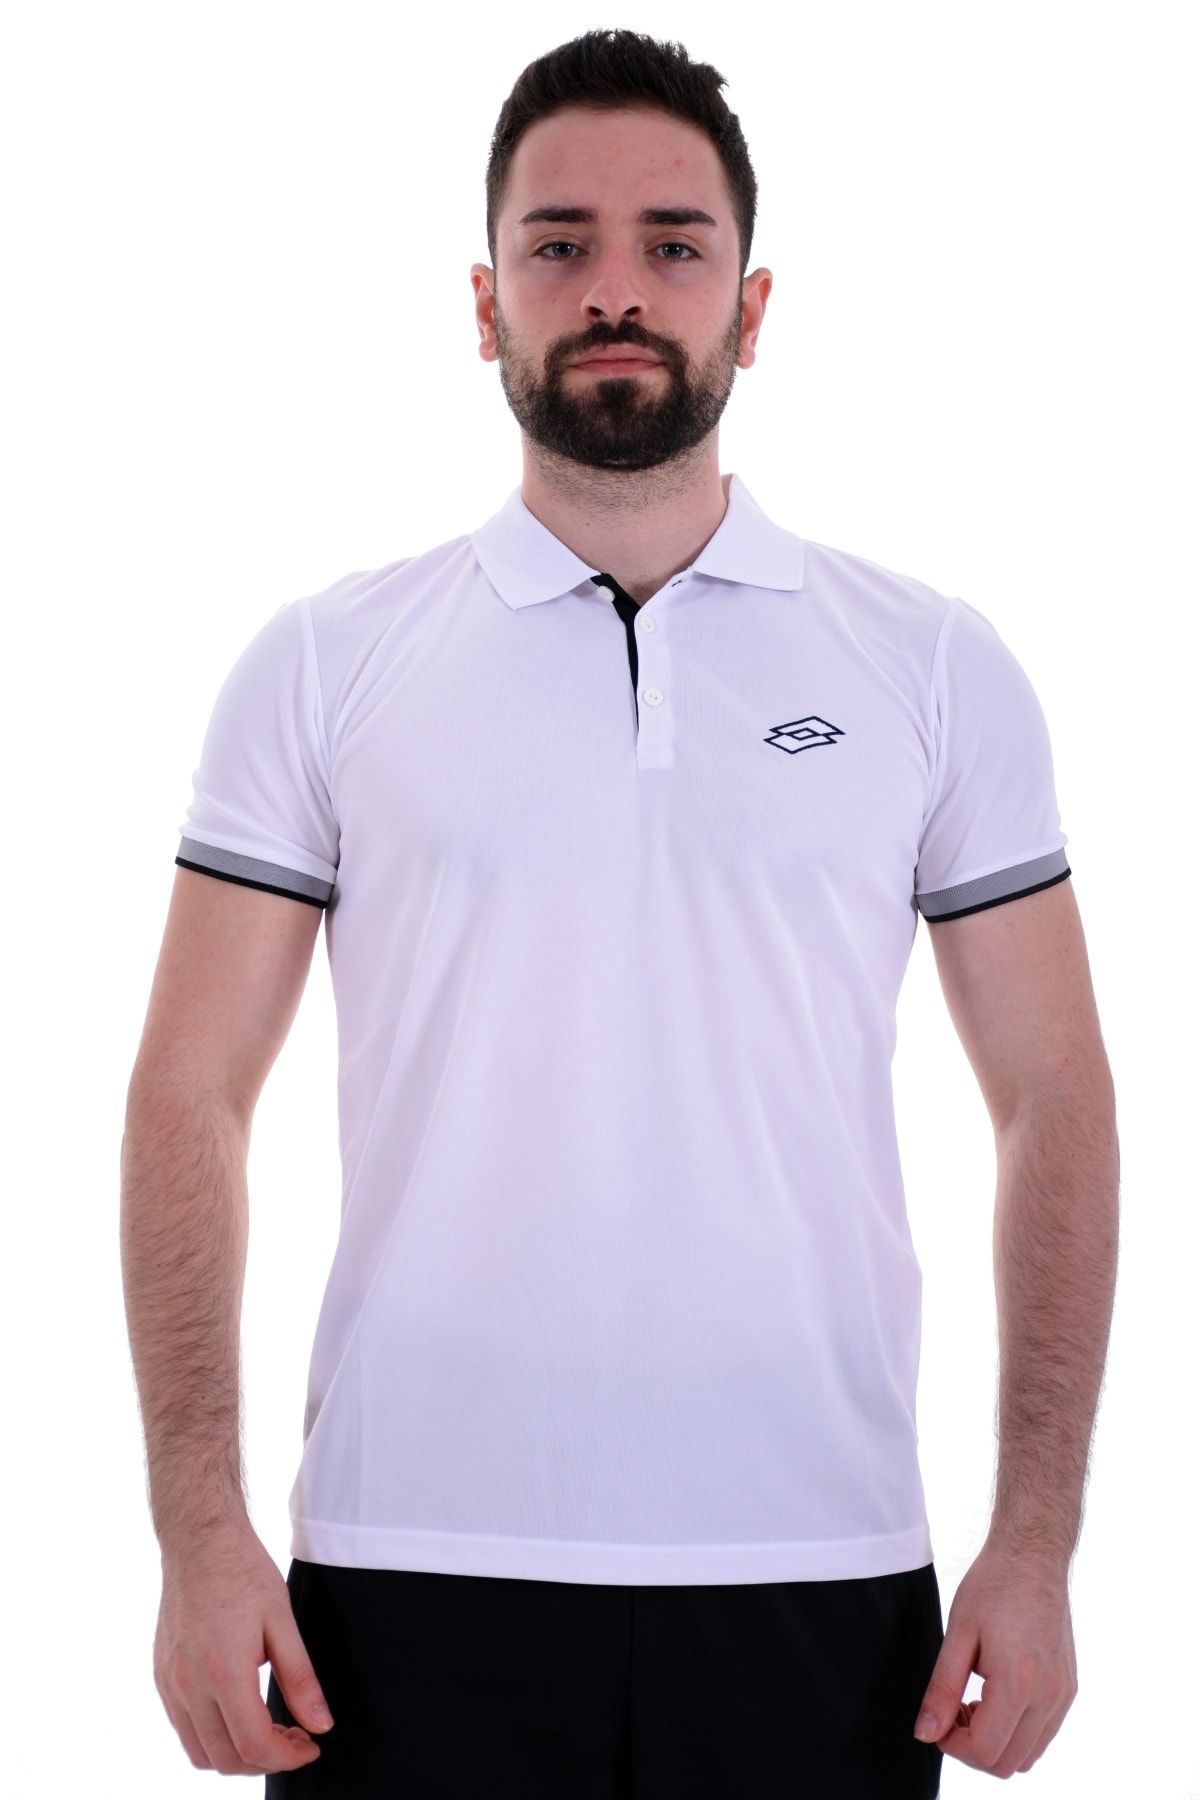 Lotto Polo T-shirt Erkek Beyaz/gri-malawı Polo Pl-r3659